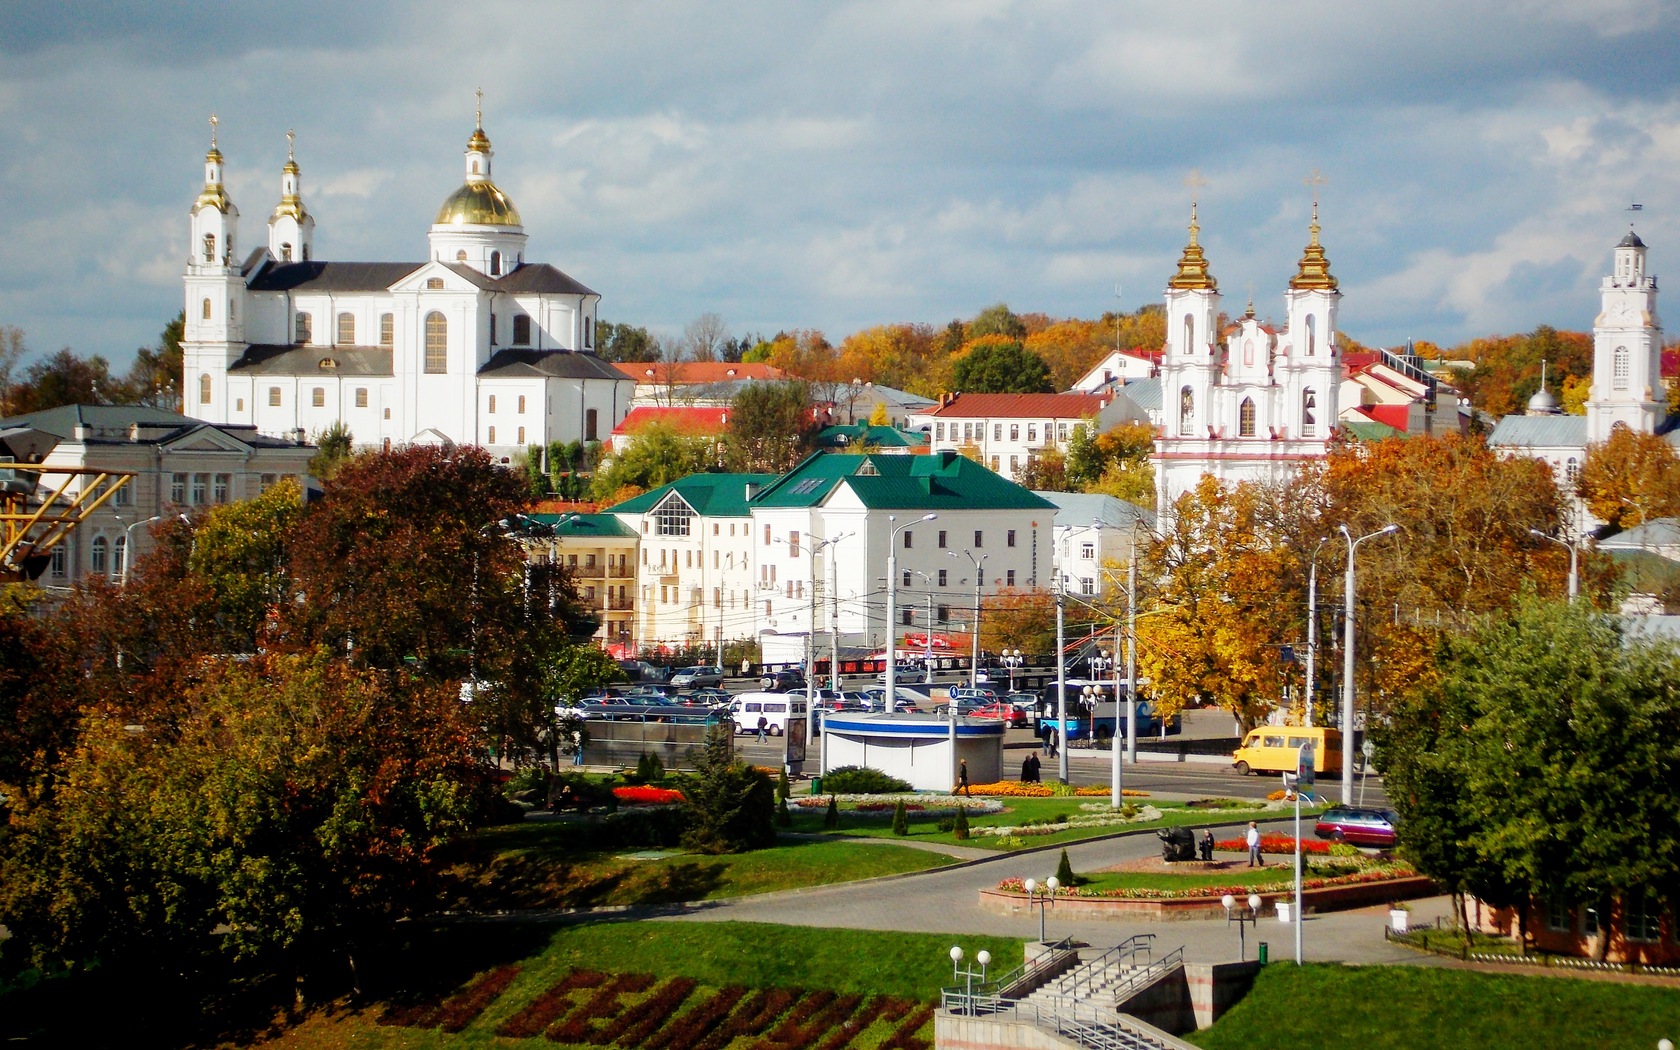 عدد سكان دولة روسيا البيضاء